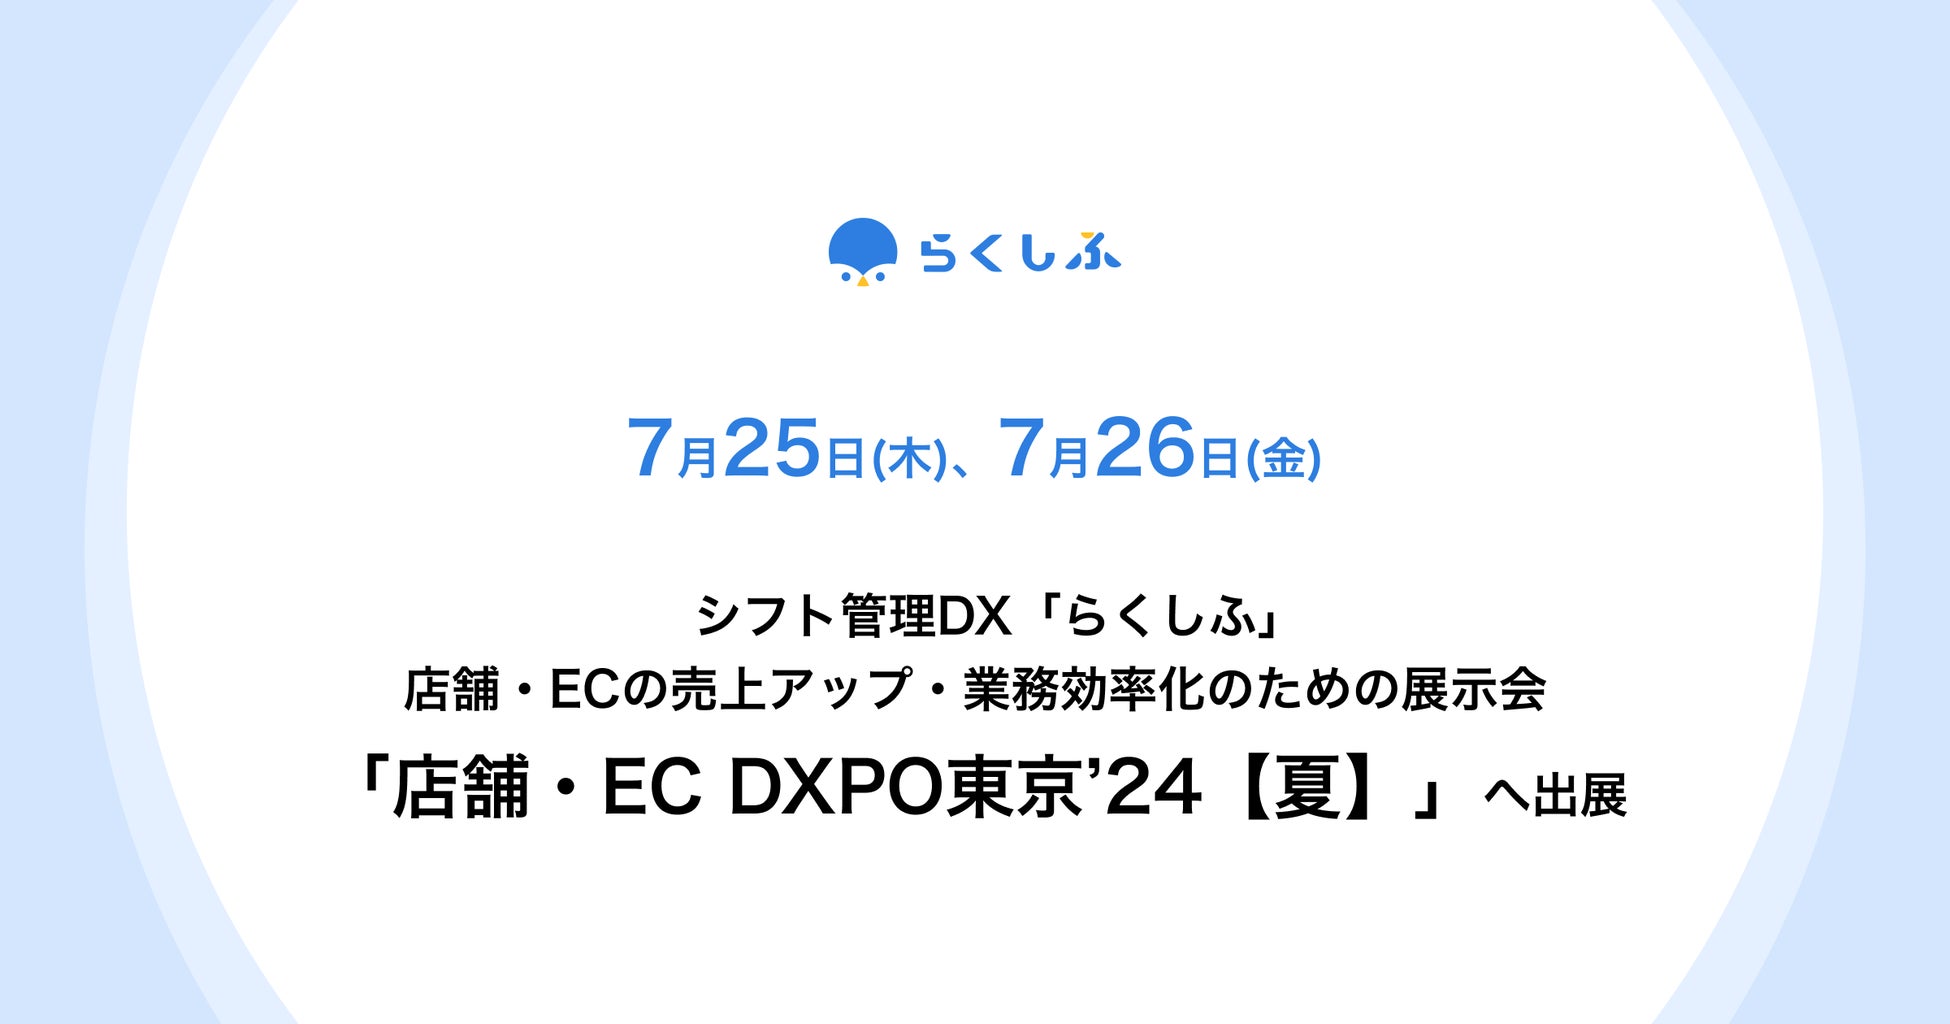 クロスビットのシフト管理DX「らくしふ」、店舗・ECの売上アップ・業務効率化のための展示会「店舗・EC DXPO東京’24【夏】」に出展